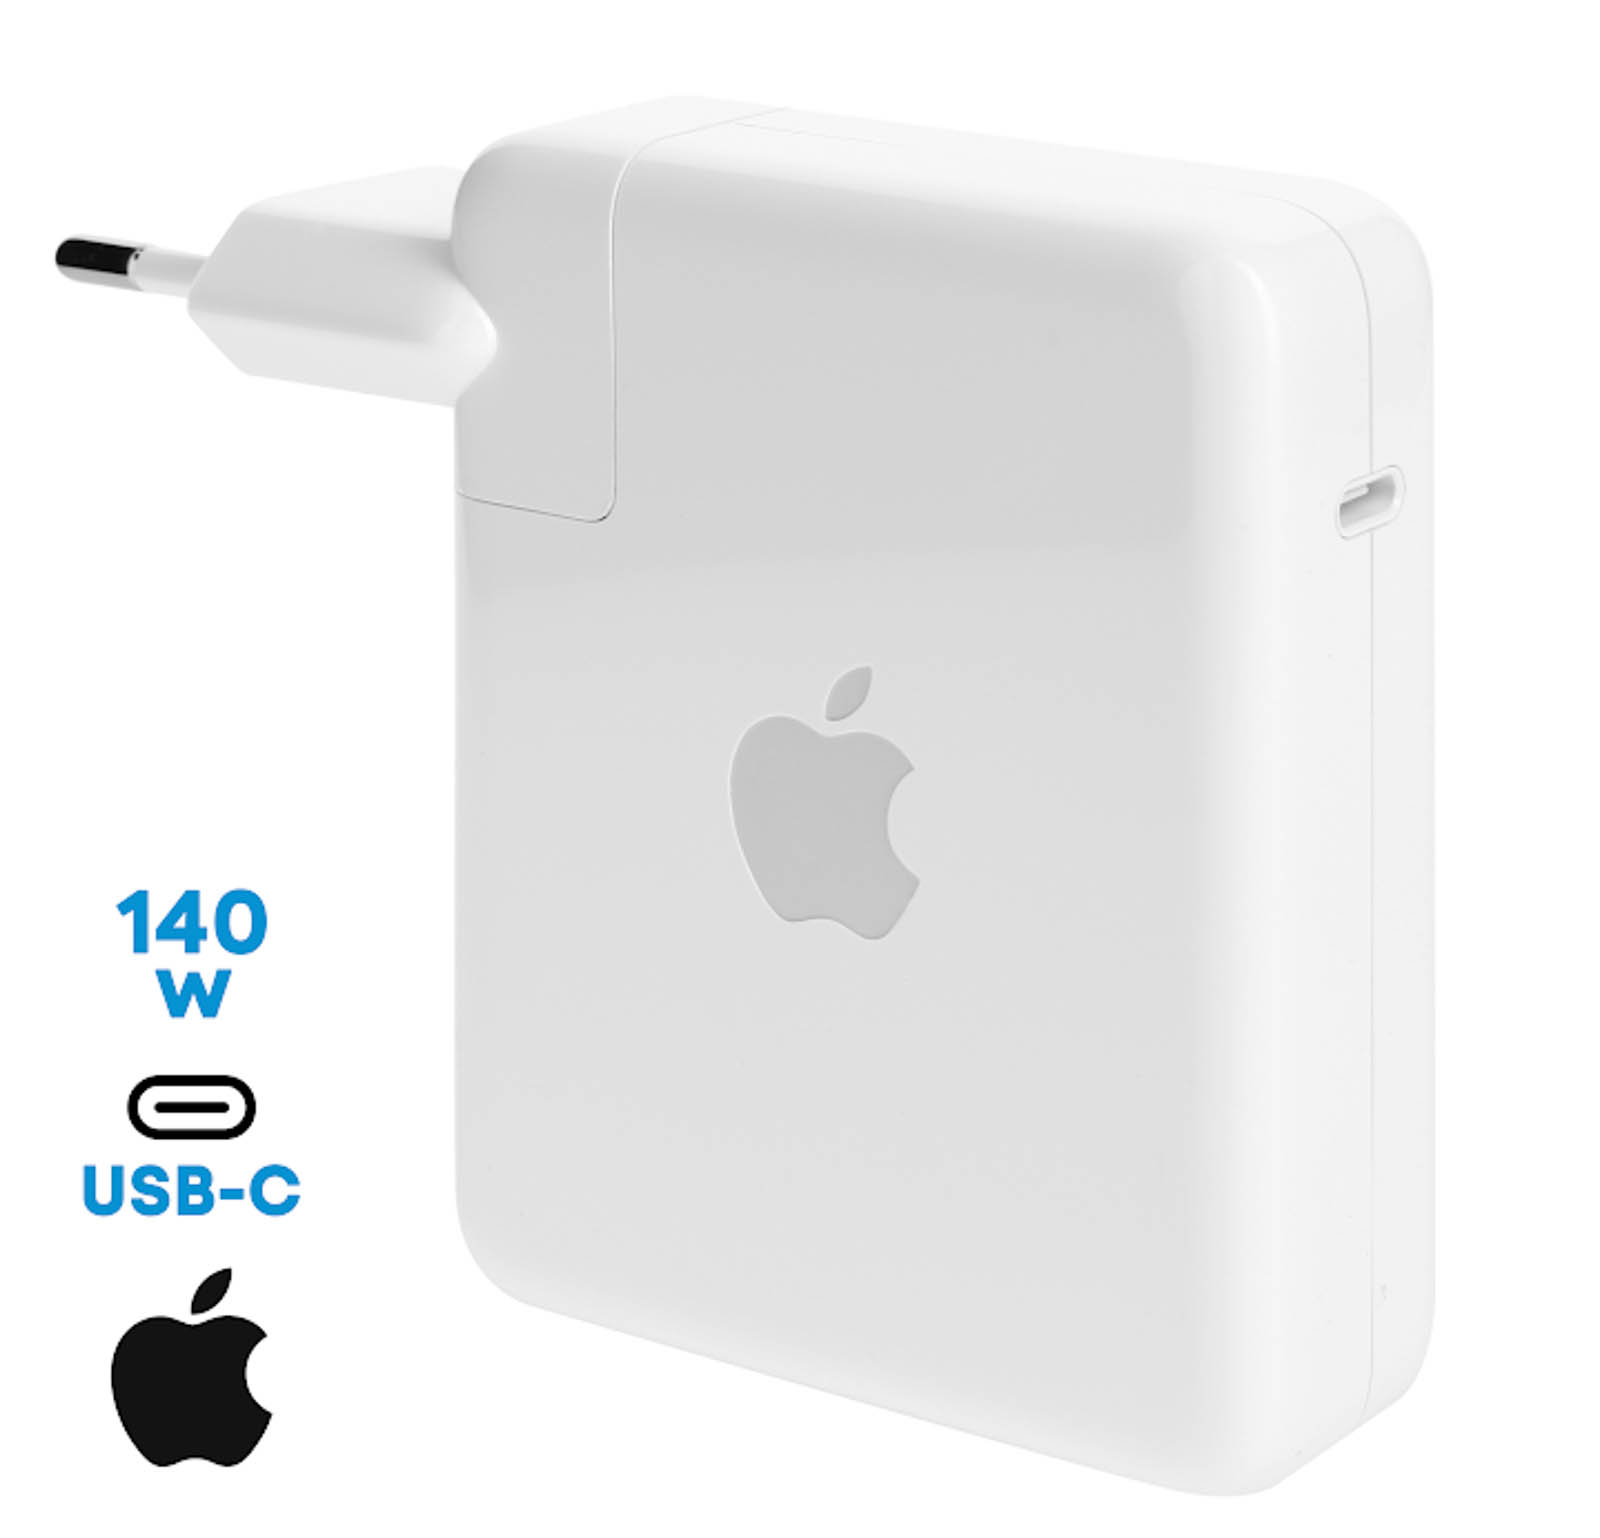 Chargeurs & câbles USB pour iPhone 13 Pro